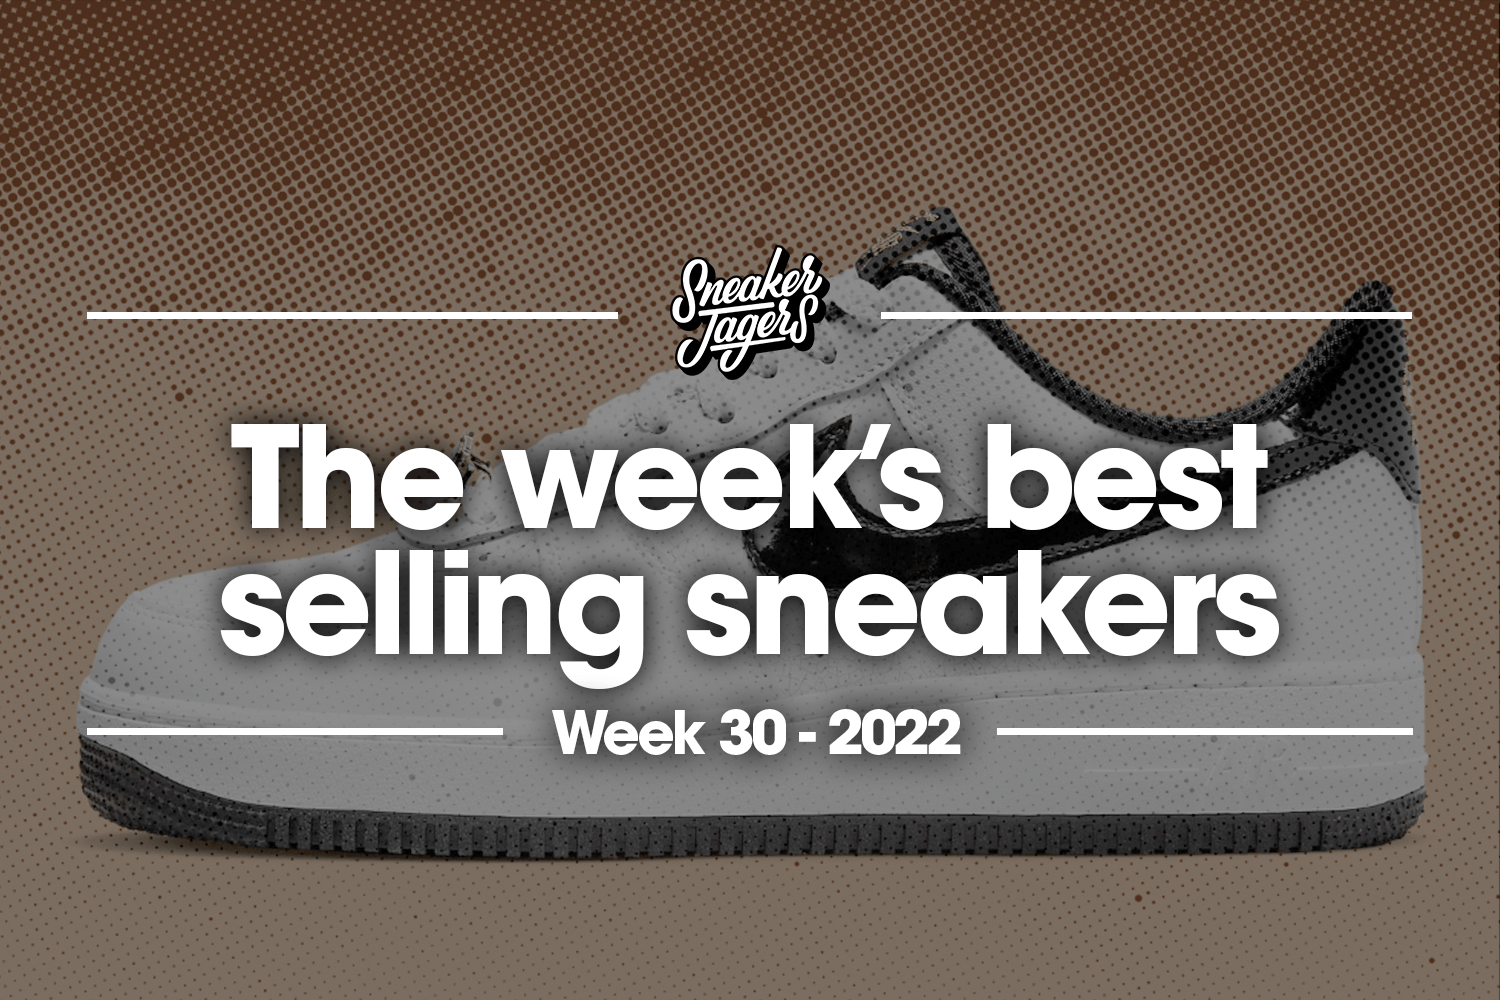 The 5 best-selling sneakers of week 30